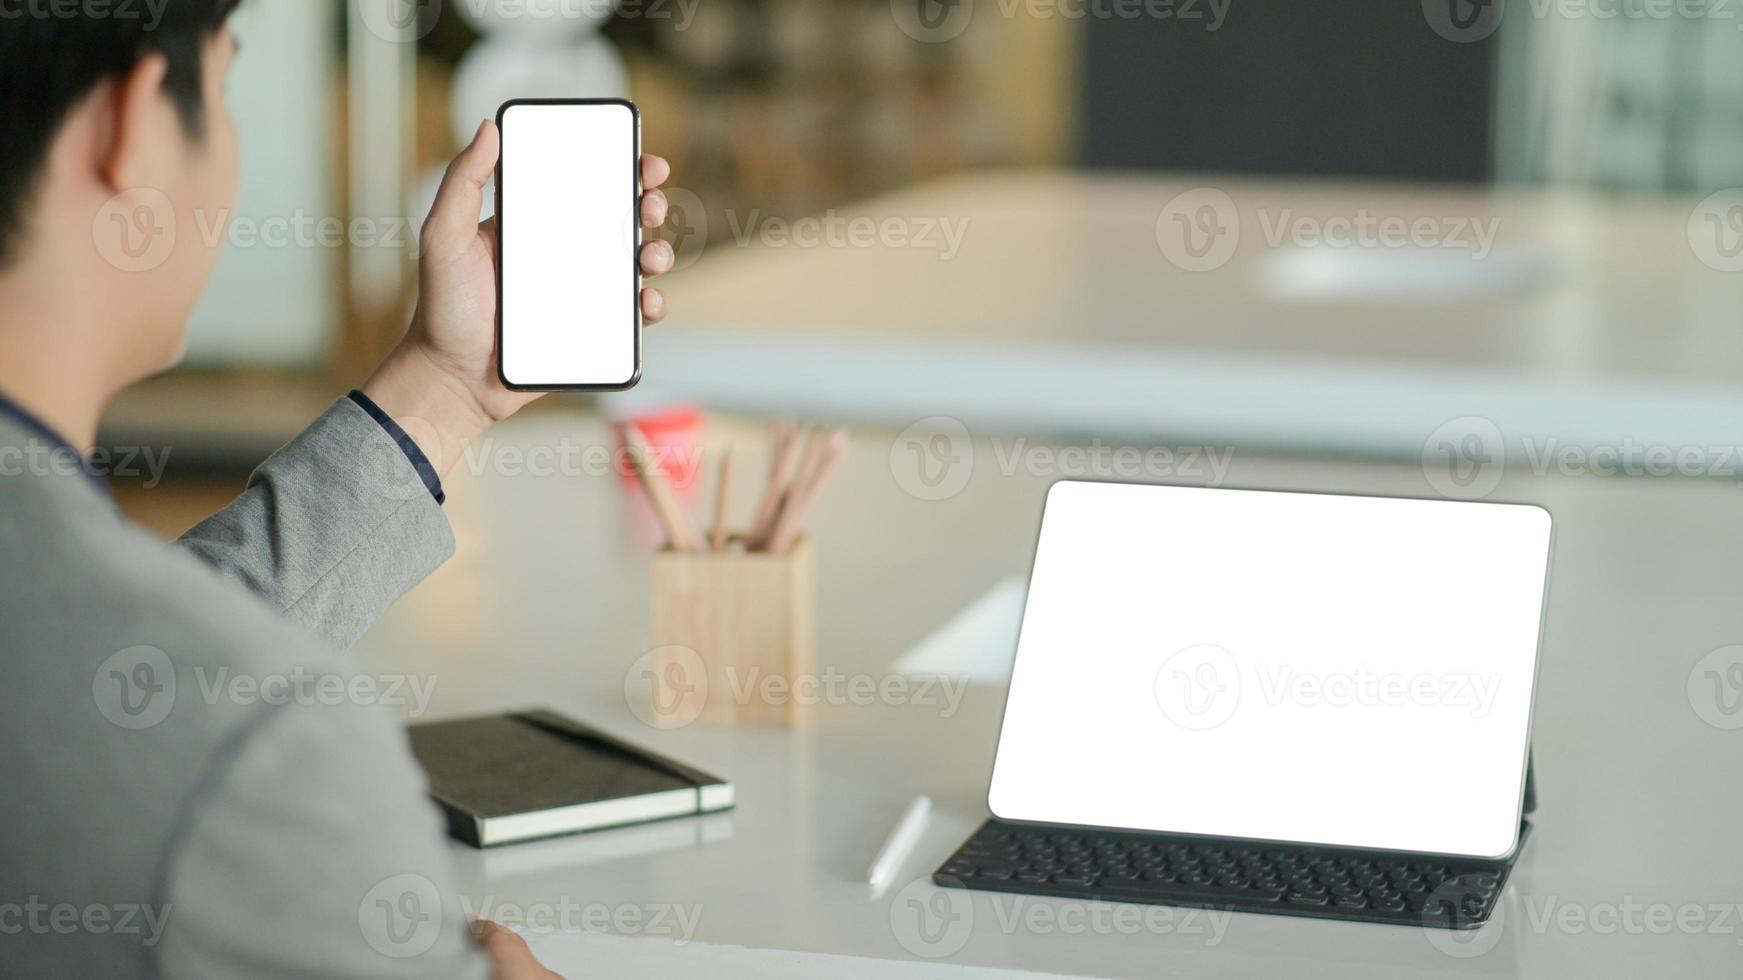 jovem empresário segura um smartphone de tela em branco na mão e um laptop de tela em branco na mesa. foto